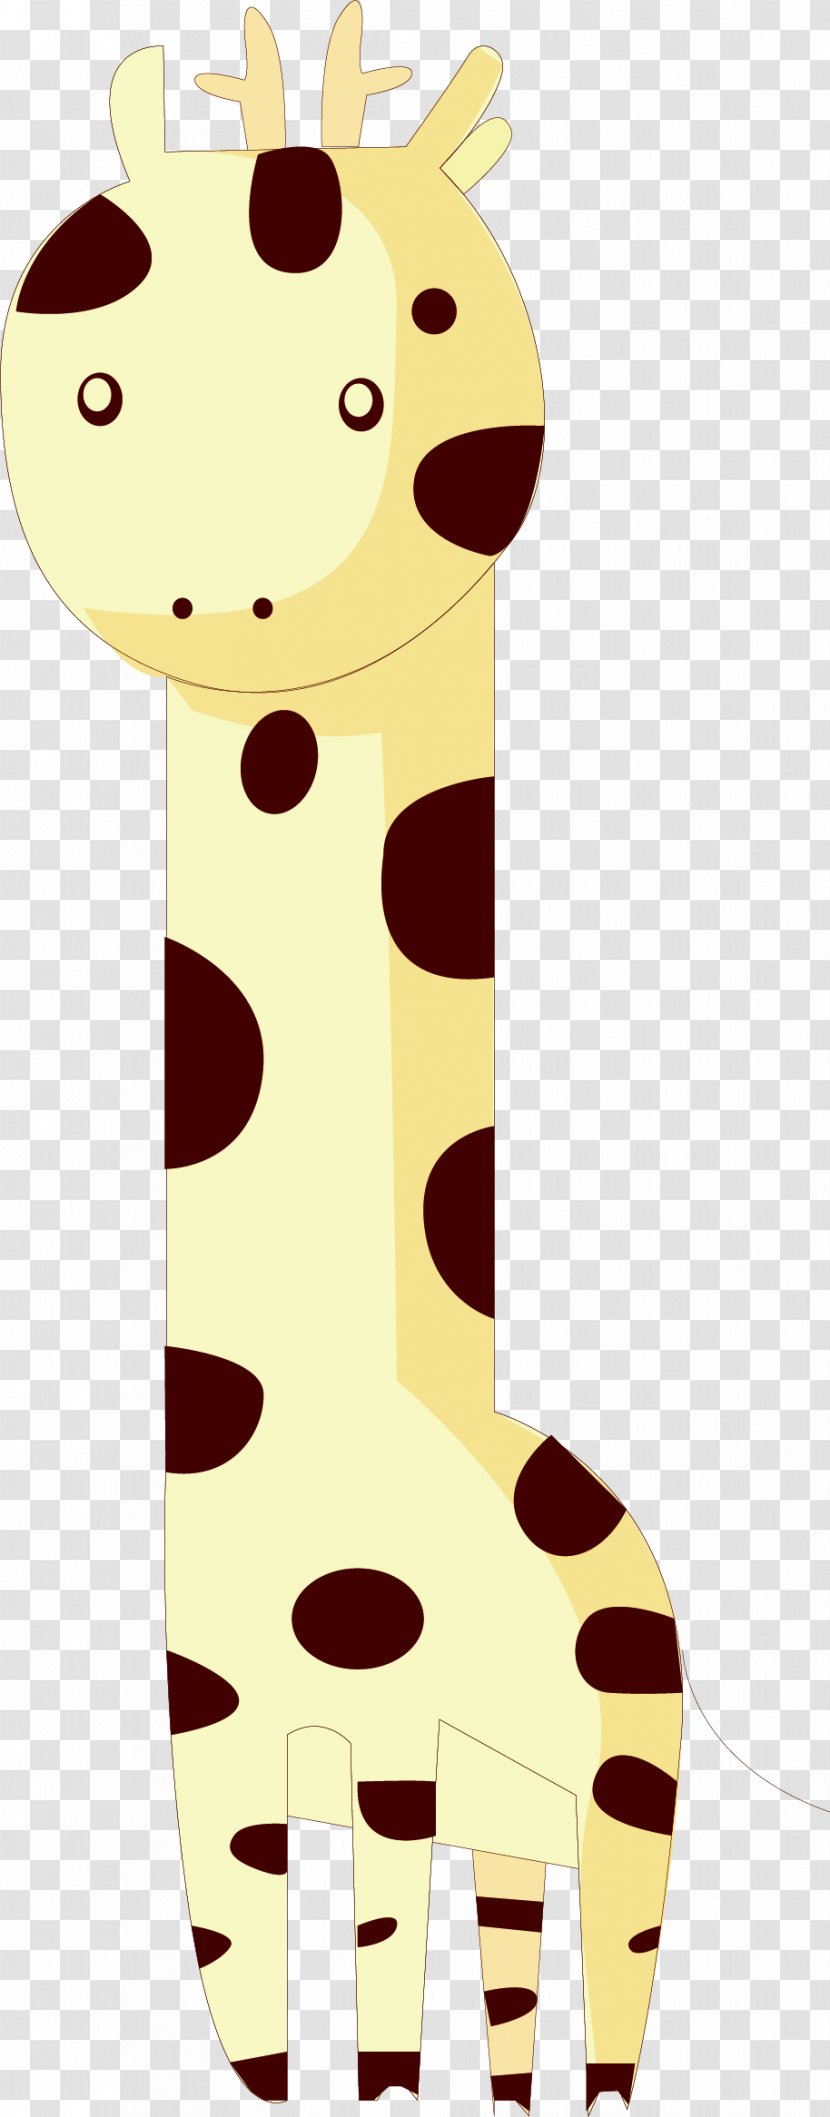 Red Deer Giraffe - Plot - Vector Hand-painted Cute Transparent PNG